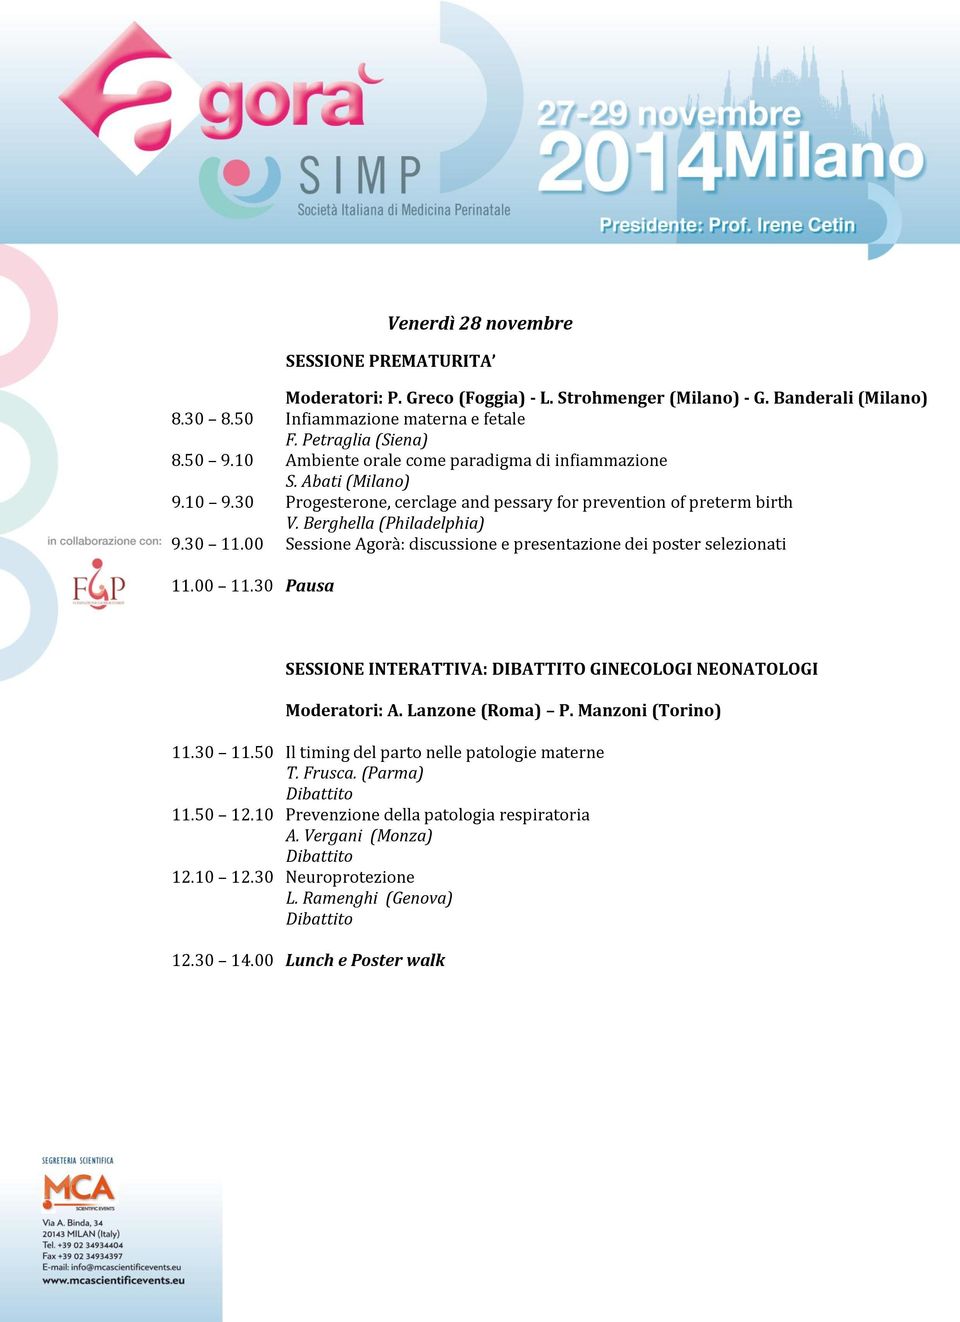 00 Sessione Agorà: discussione e presentazione dei poster selezionati 11.00 11.30 Pausa SESSIONE INTERATTIVA: DIBATTITO GINECOLOGI NEONATOLOGI Moderatori: A. Lanzone (Roma) P. Manzoni (Torino) 11.